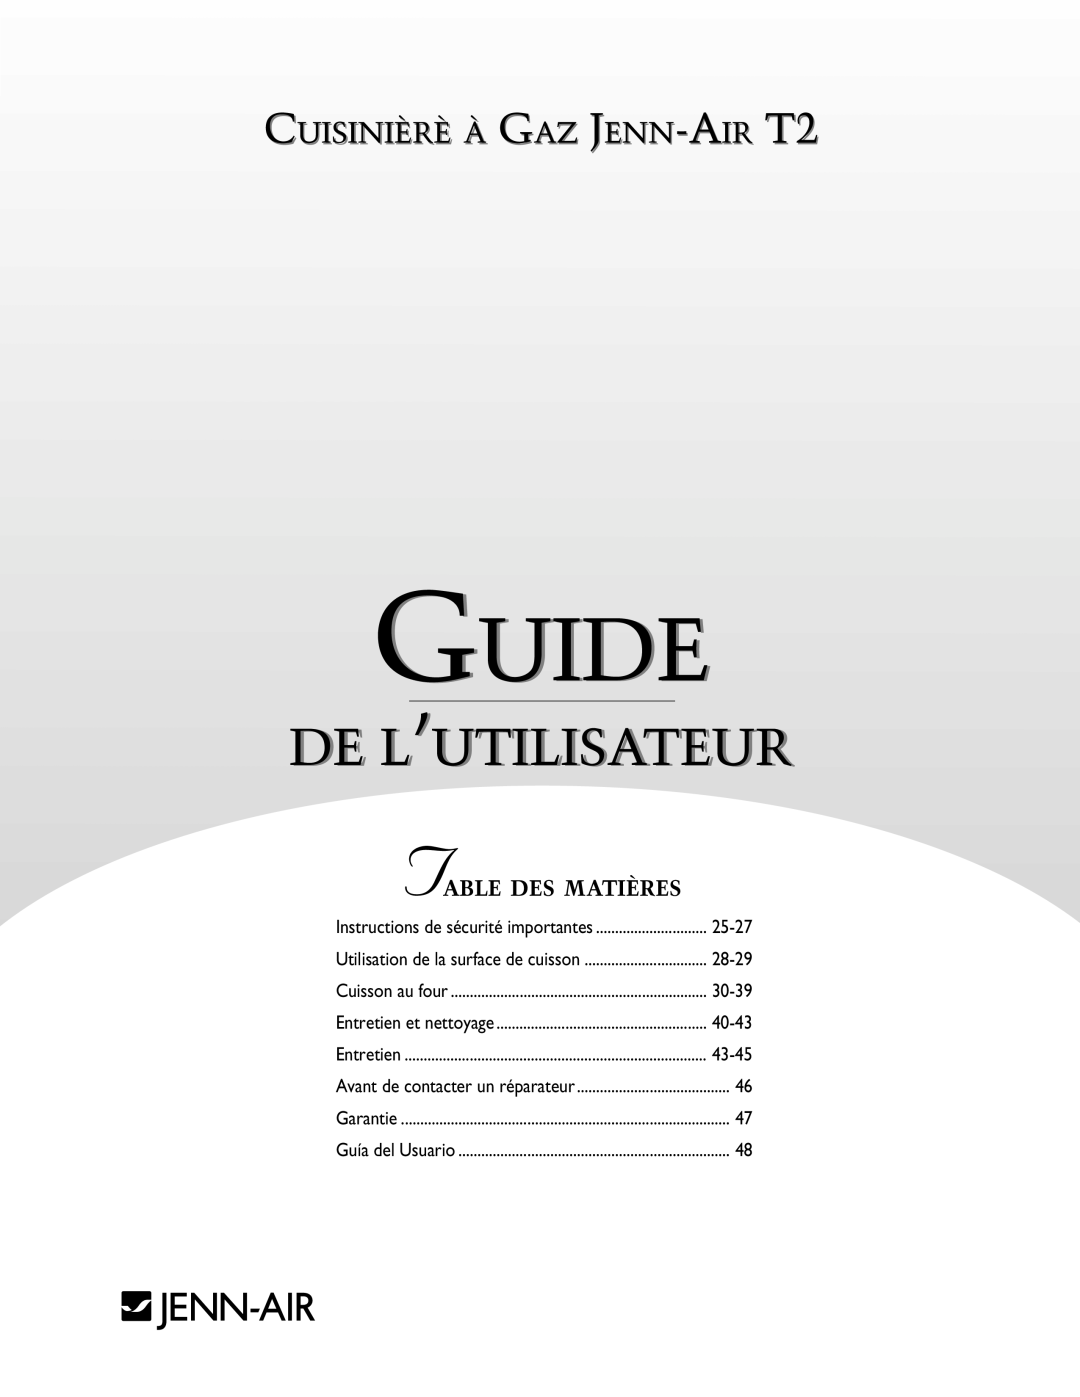 Jenn-Air warranty Guide, De L’Utilisateur, CUISINIÈRÈ À GAZ JENN-AIR T2, Table Des Matières 